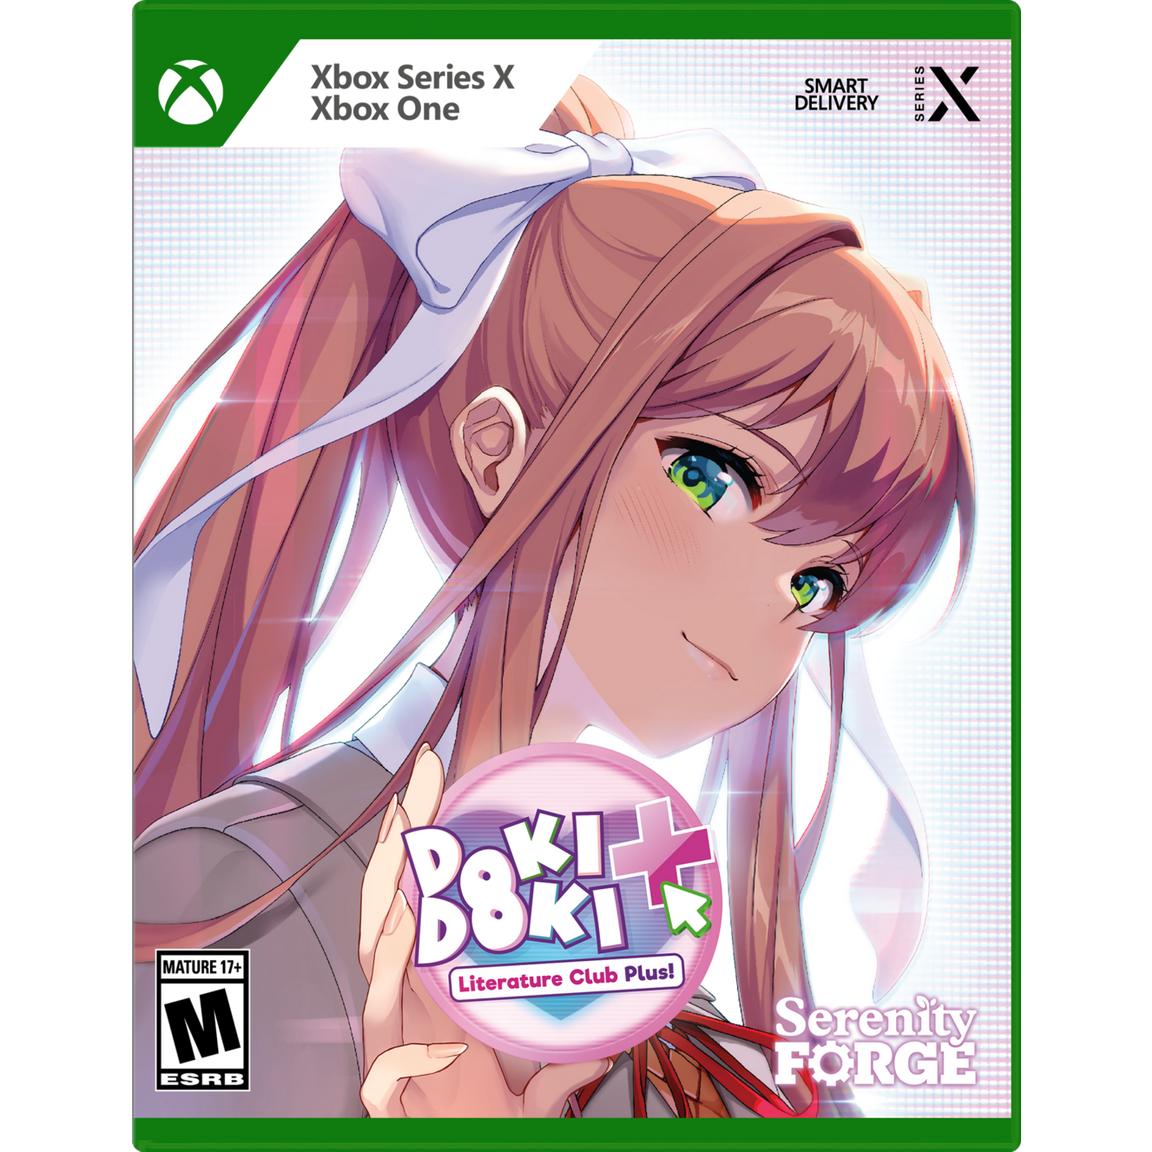 цена Видеоигра Doki Doki Literature Club Plus! Premium Physical Edition - Xbox Series X, Xbox One